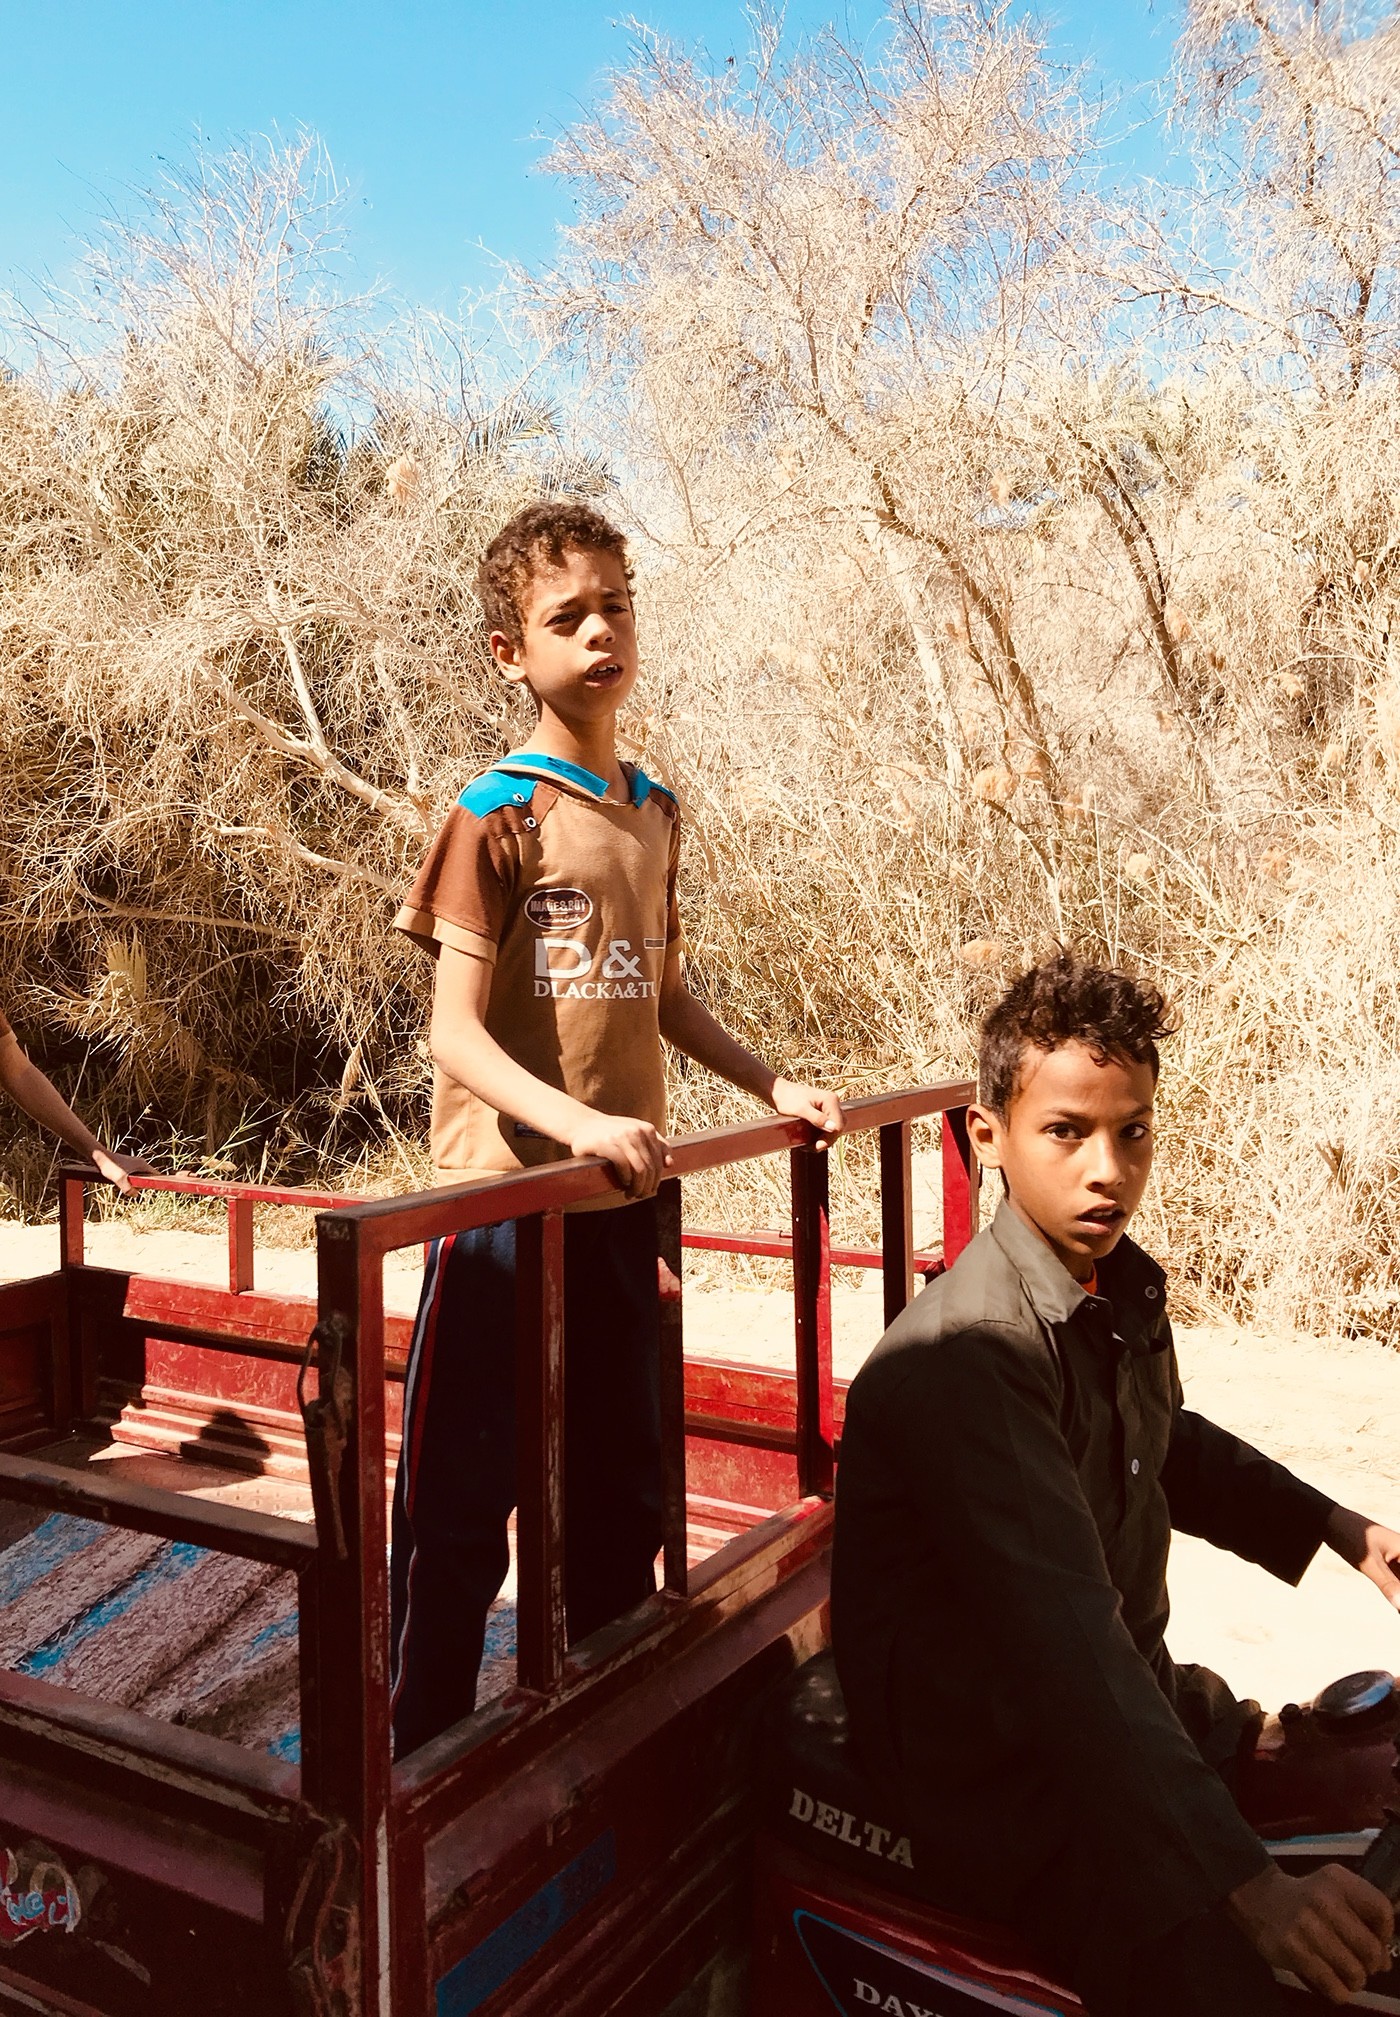 沙漠之上的生命之源 手机摄影记录沙漠上的民族